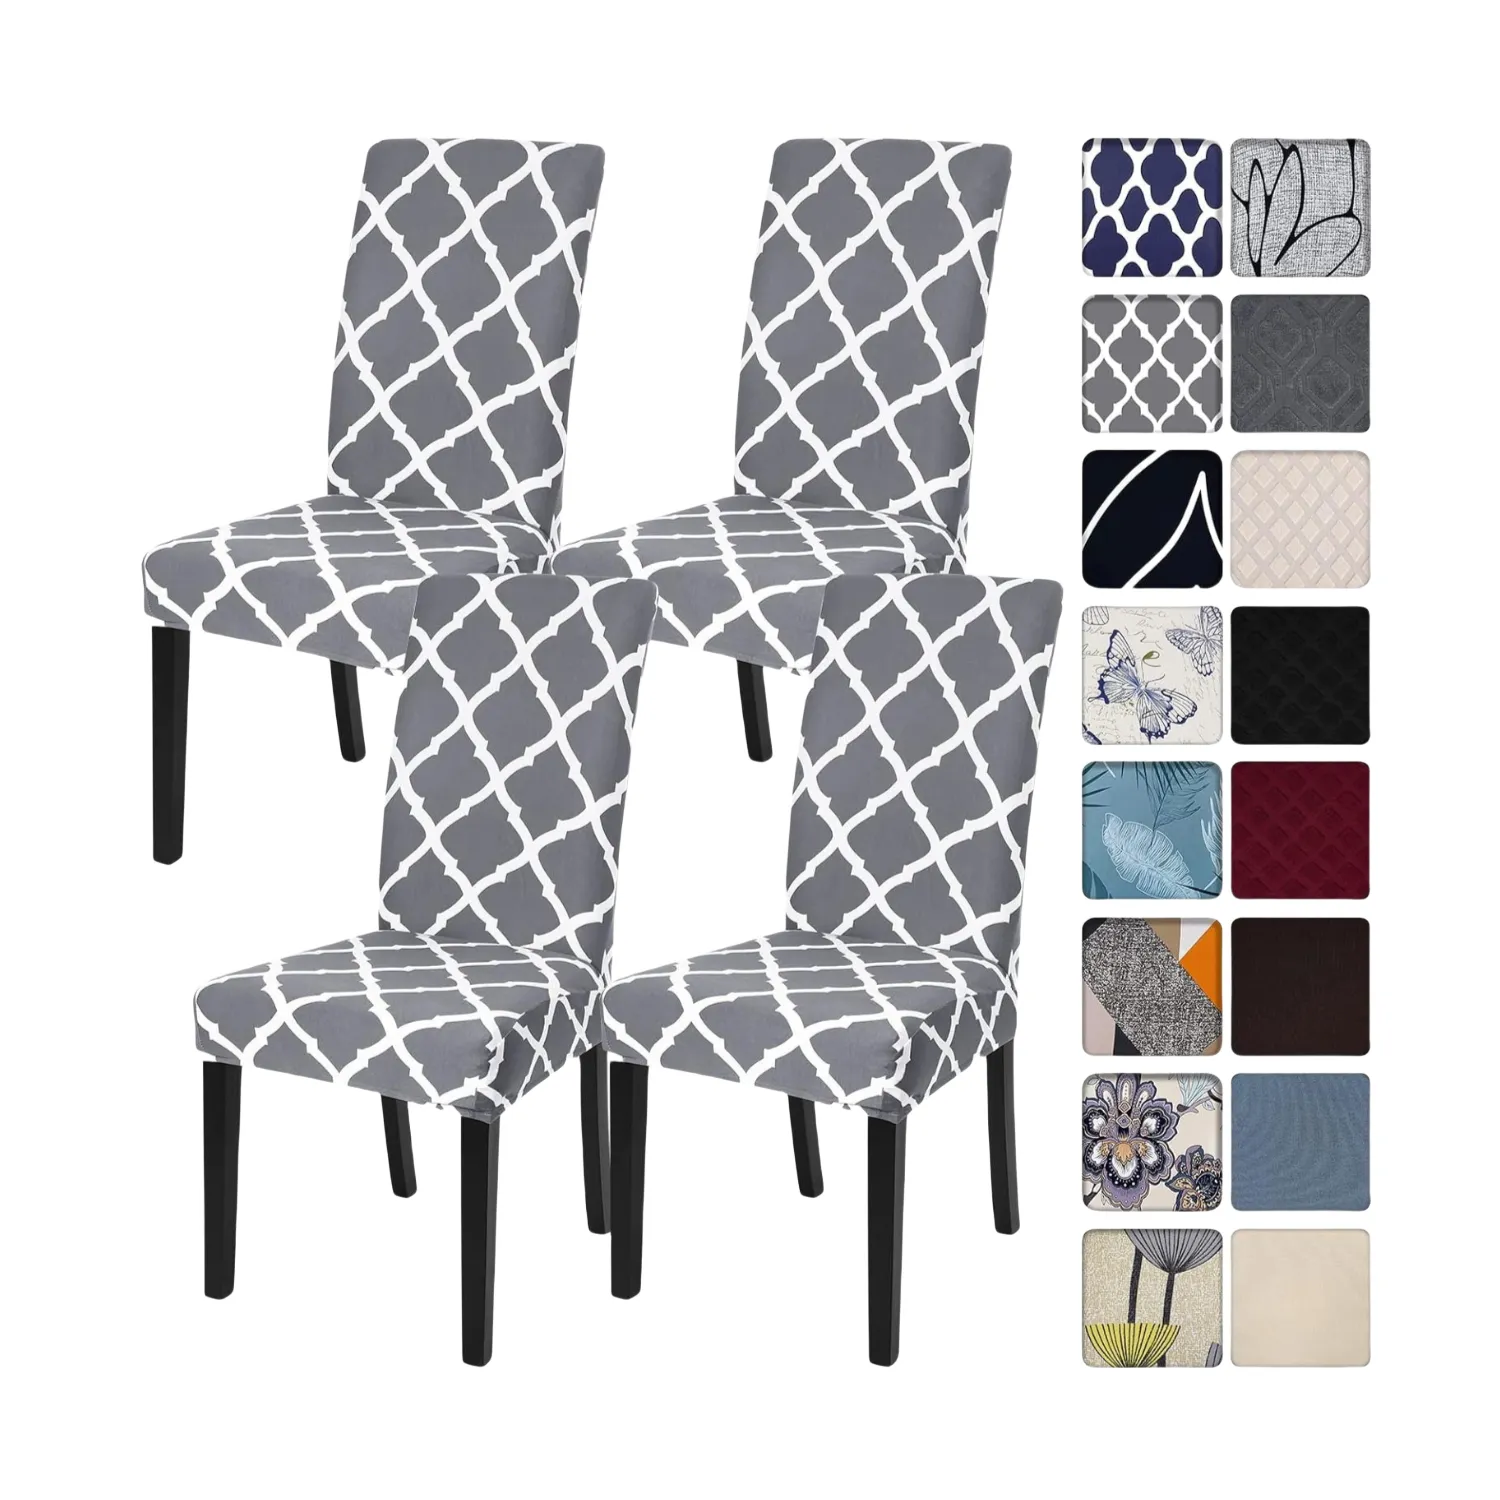 Fundas de sillas personalizadas, fundas para sillas de comedor impresas, fundas elásticas para sillas para comedor, sala de estar, juego de fundas para Sillas